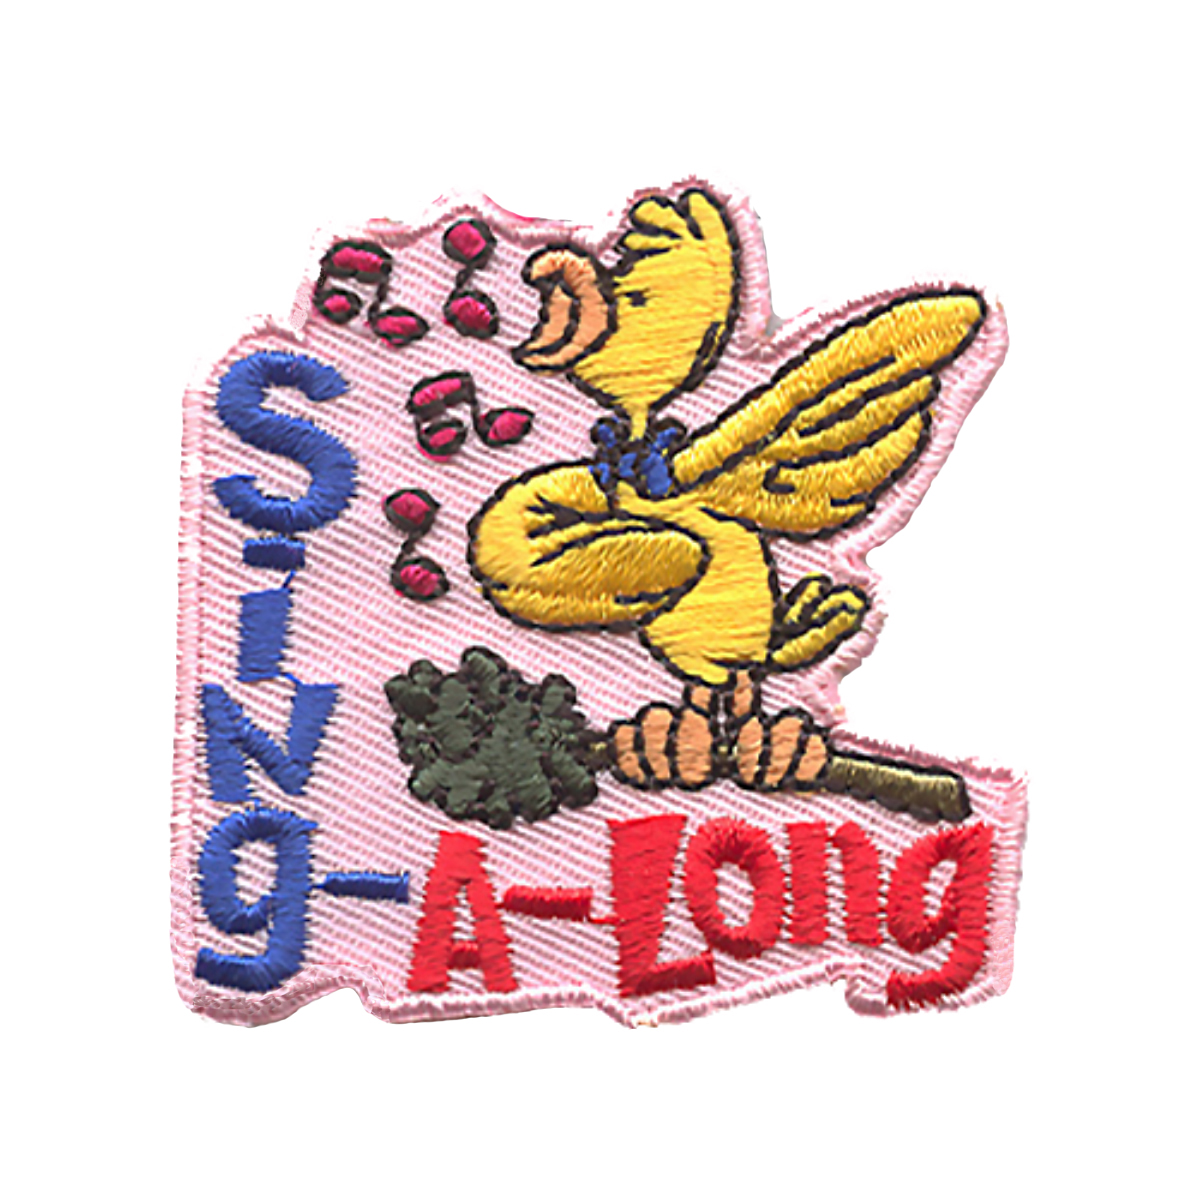 Sing Along - W